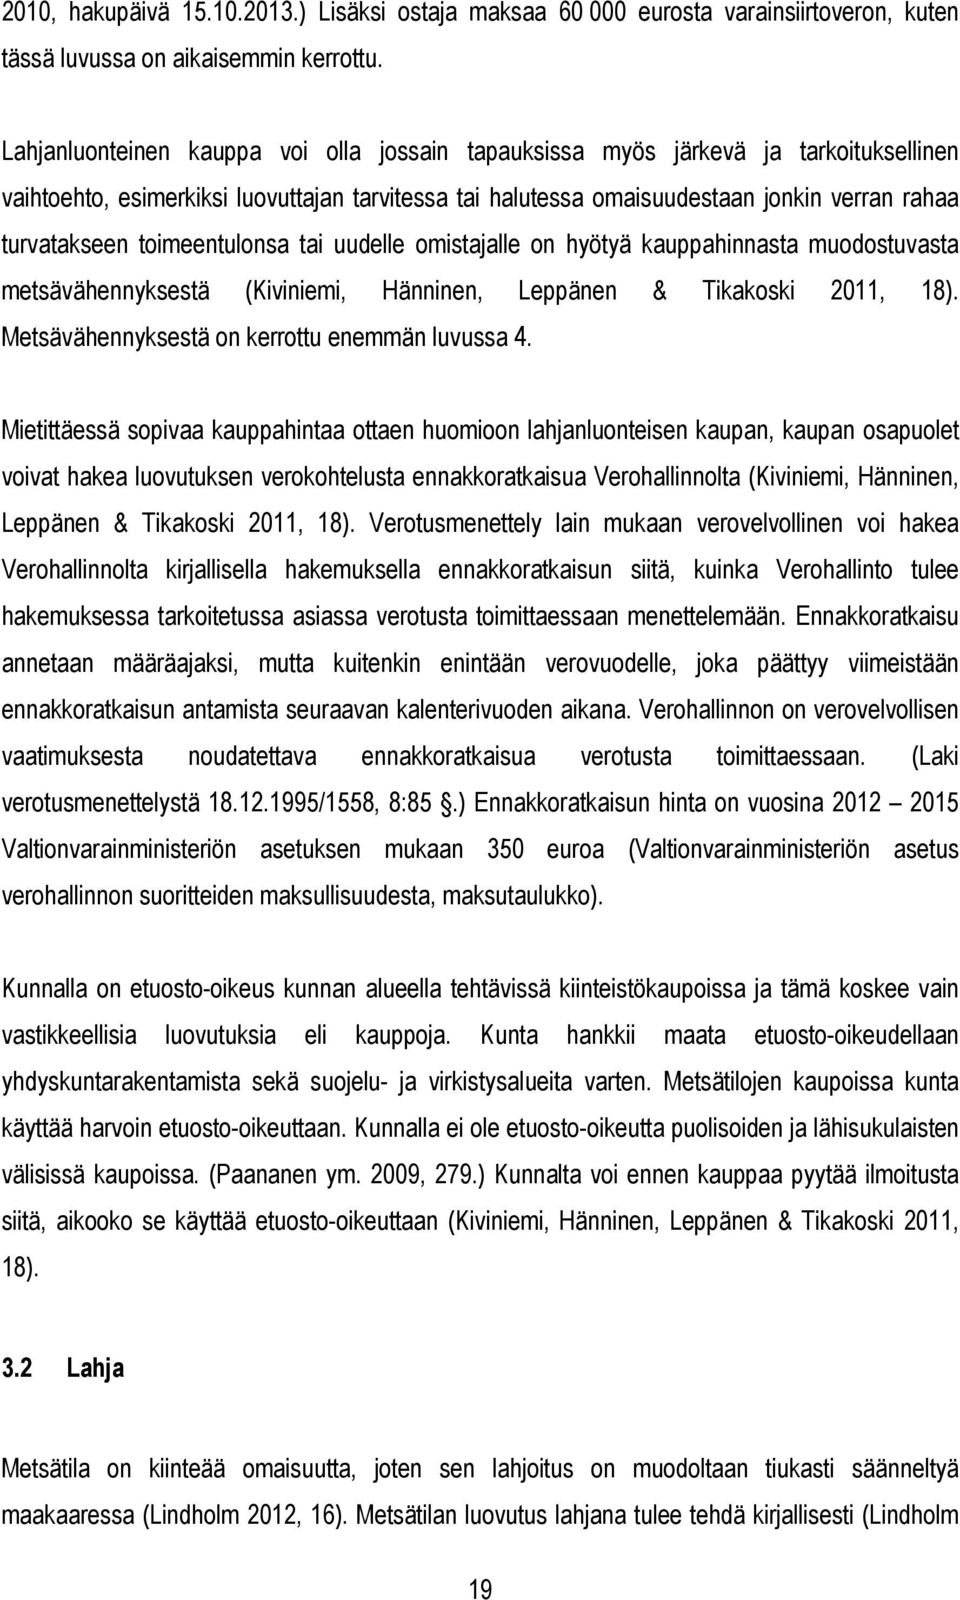 toimeentulonsa tai uudelle omistajalle on hyötyä kauppahinnasta muodostuvasta metsävähennyksestä (Kiviniemi, Hänninen, Leppänen & Tikakoski 2011, 18). Metsävähennyksestä on kerrottu enemmän luvussa 4.